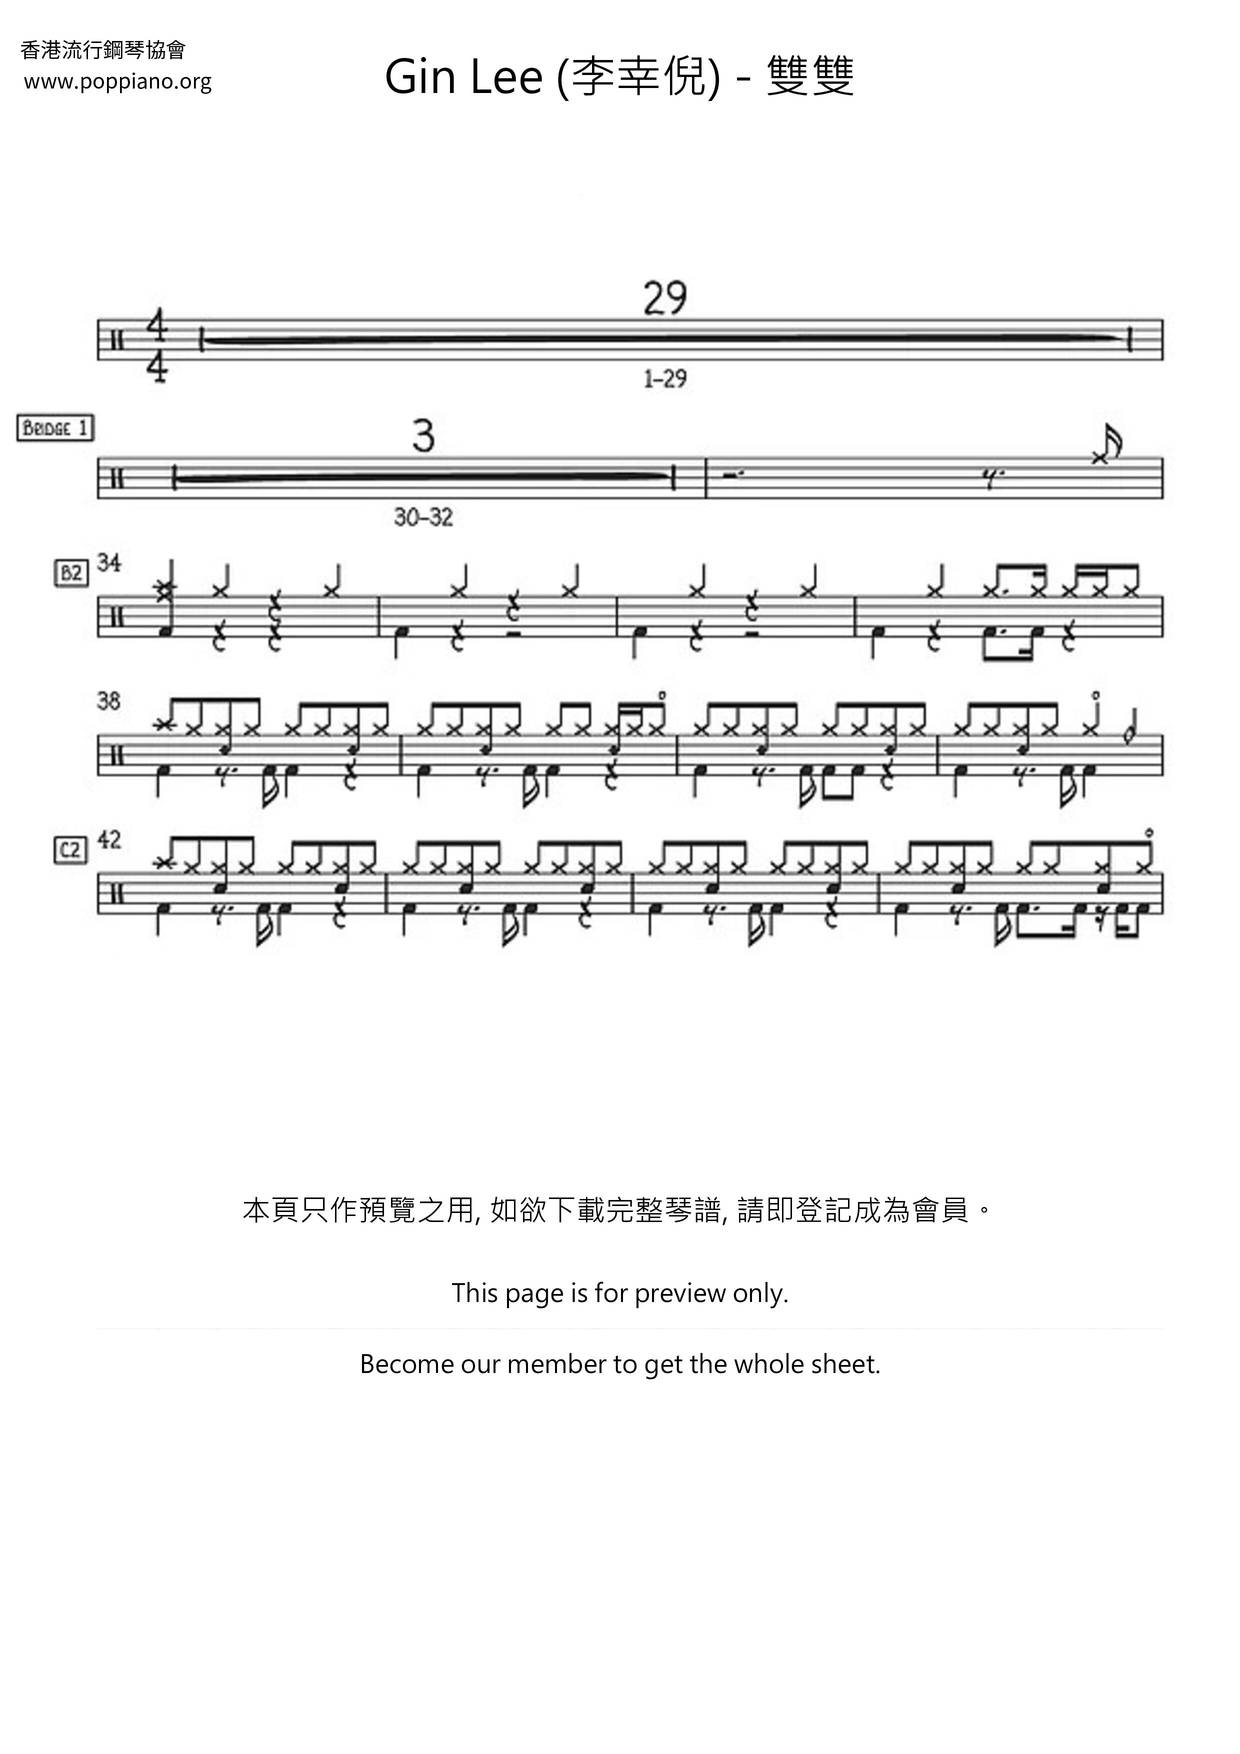 Shuangshuang Score